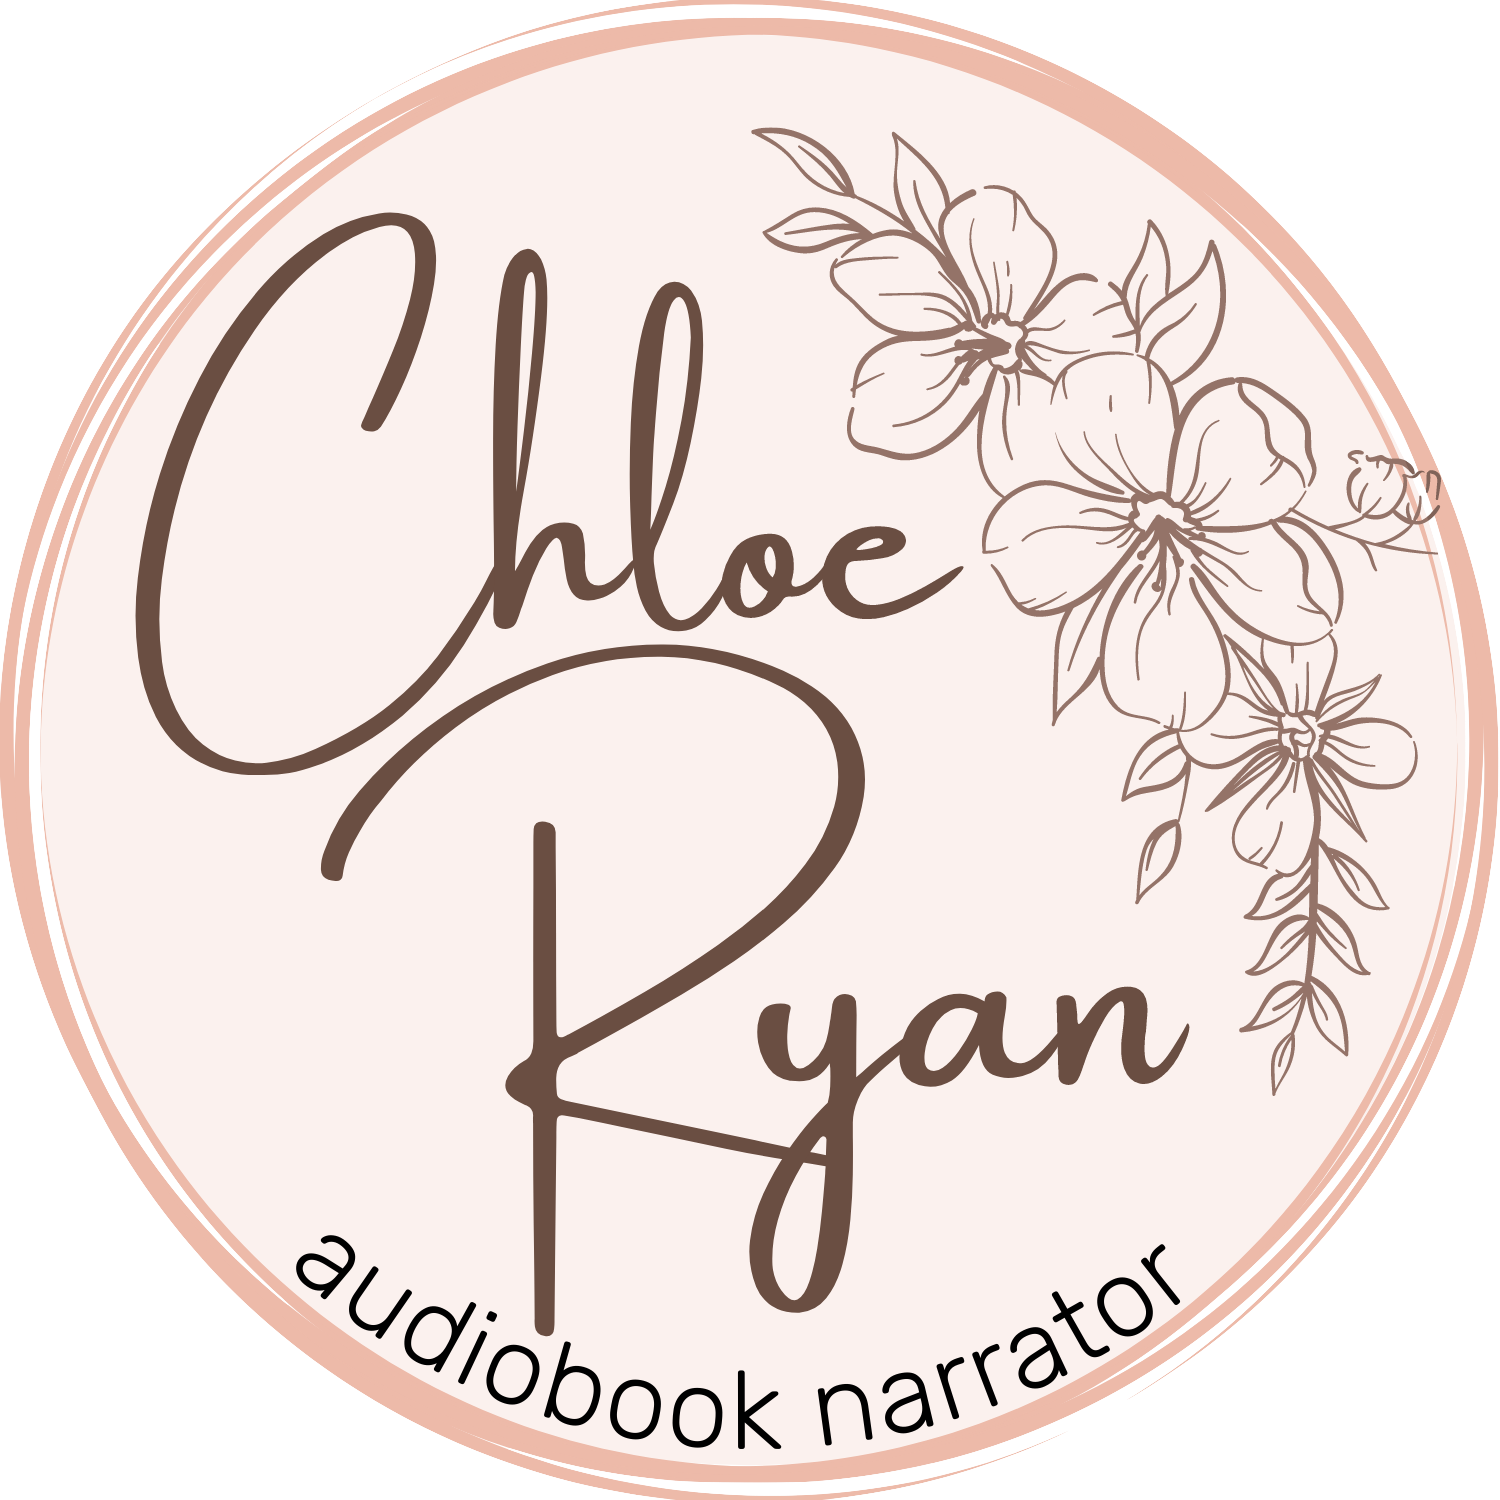 Chloe Ryan, Audiobook Narrator